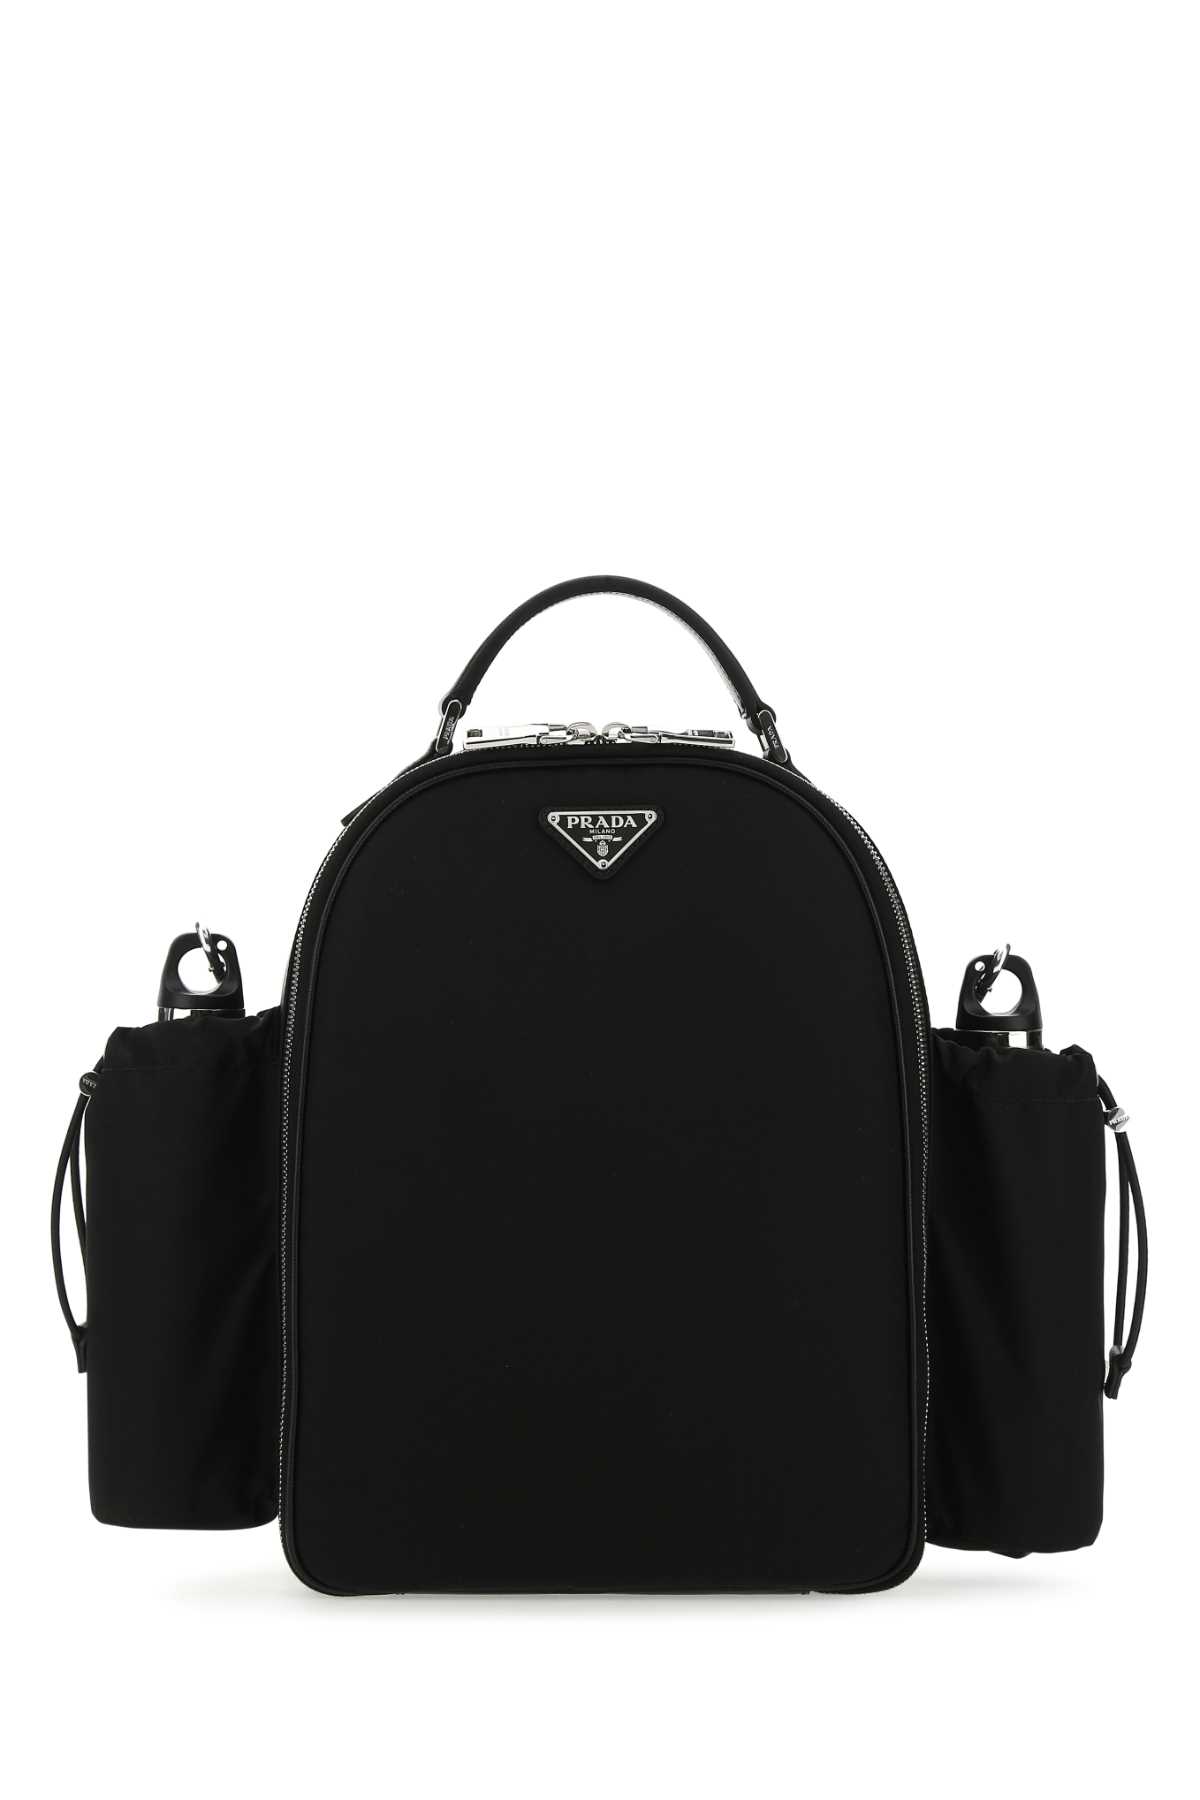 Prada Black Re-nylon Picnic Backpack In F0002